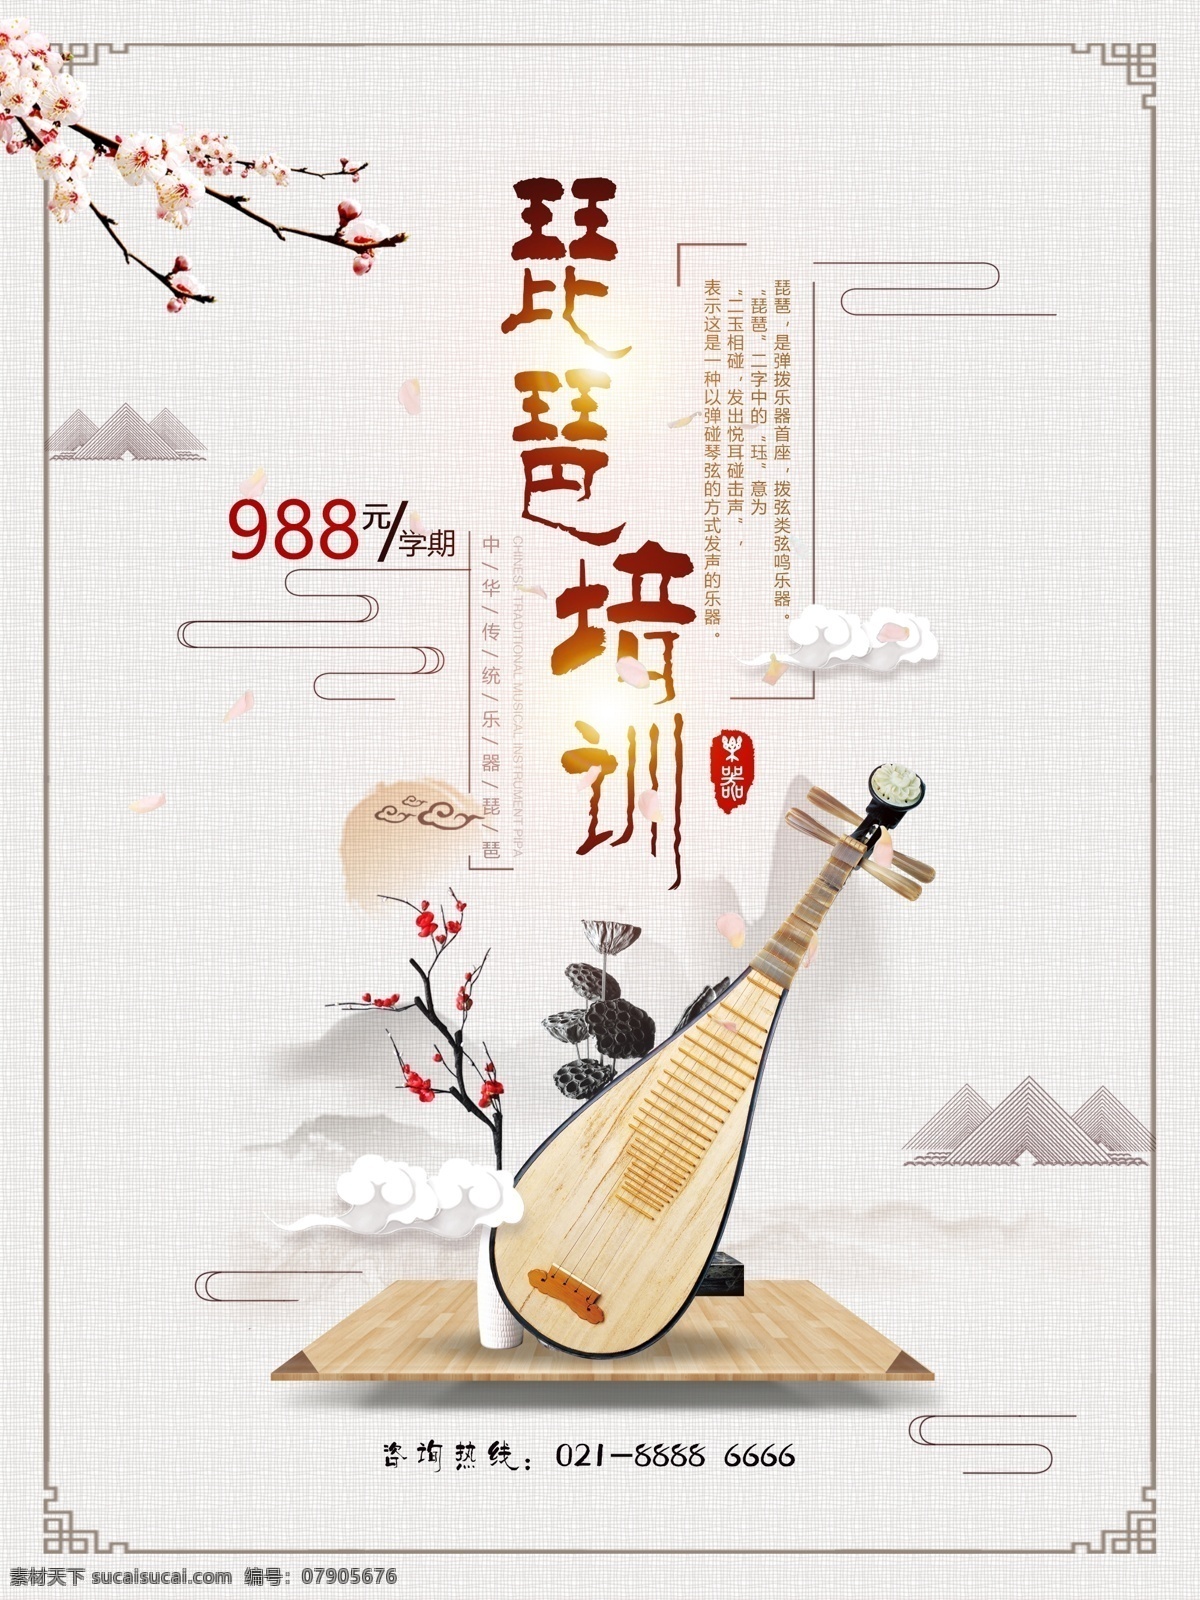 水墨 风传 统 乐器 琵琶 培训 宣传海报 中国风 水墨风 海报 兴趣班 乐器培训班 传统乐器 琵琶海报